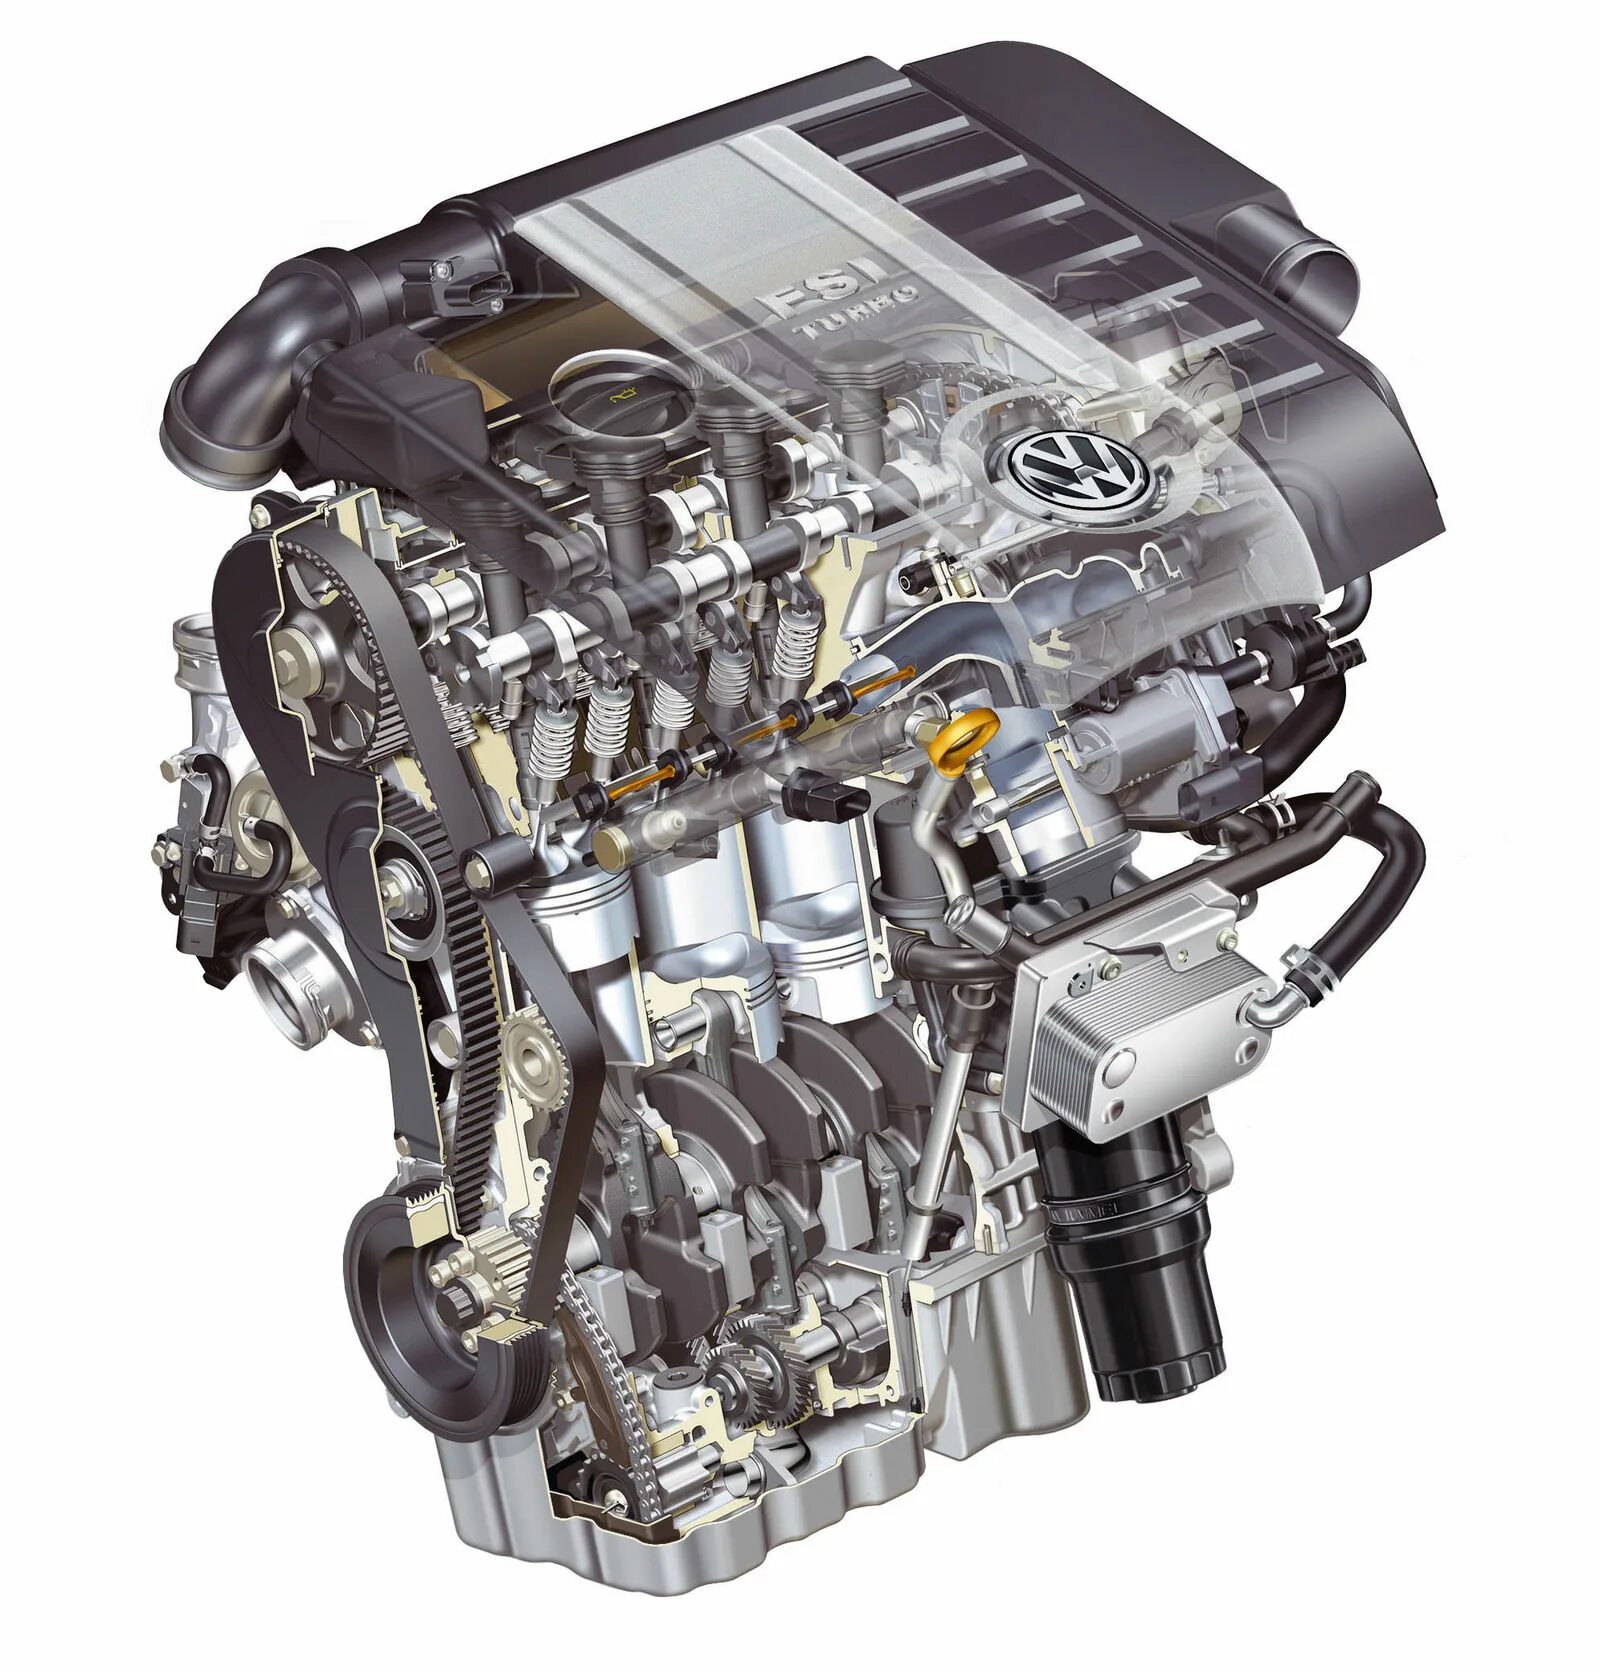 Мотор 2.0 FSI. 1.8 FSI двигатель. VW 1.6 FSI. FSI 2.0 Turbo двигатель.